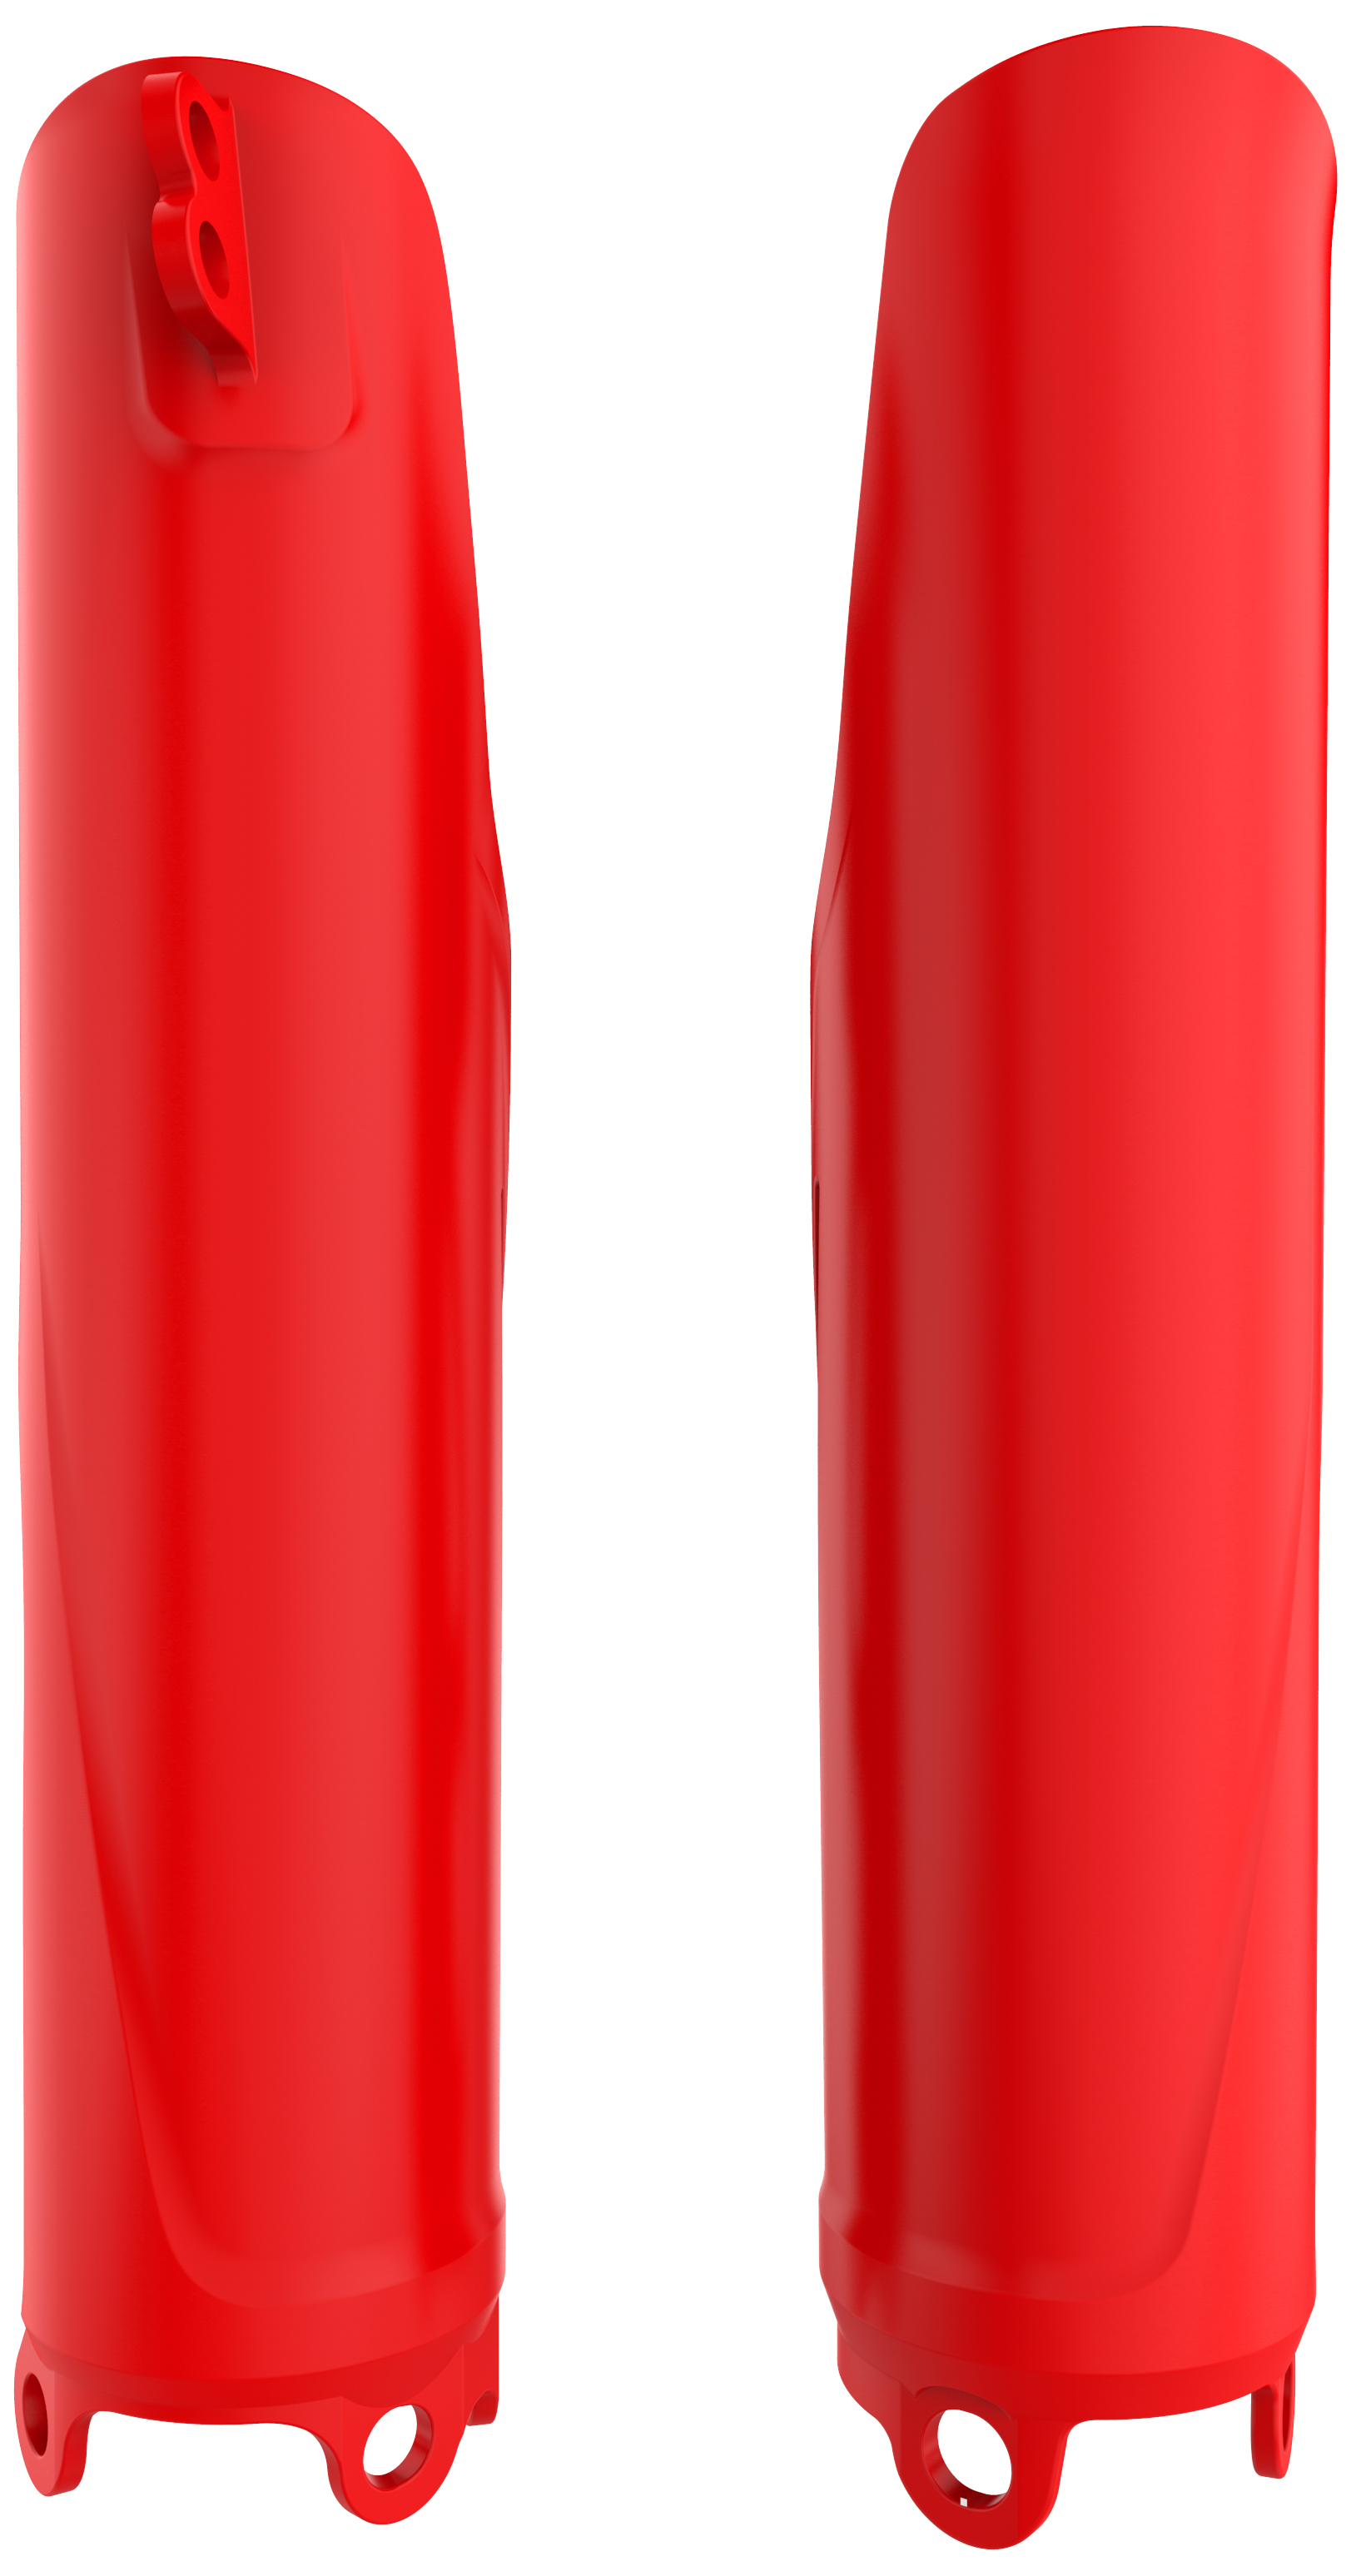 Kryty přední vidlice POLISPORT 8351900003 (pár) červená cr04